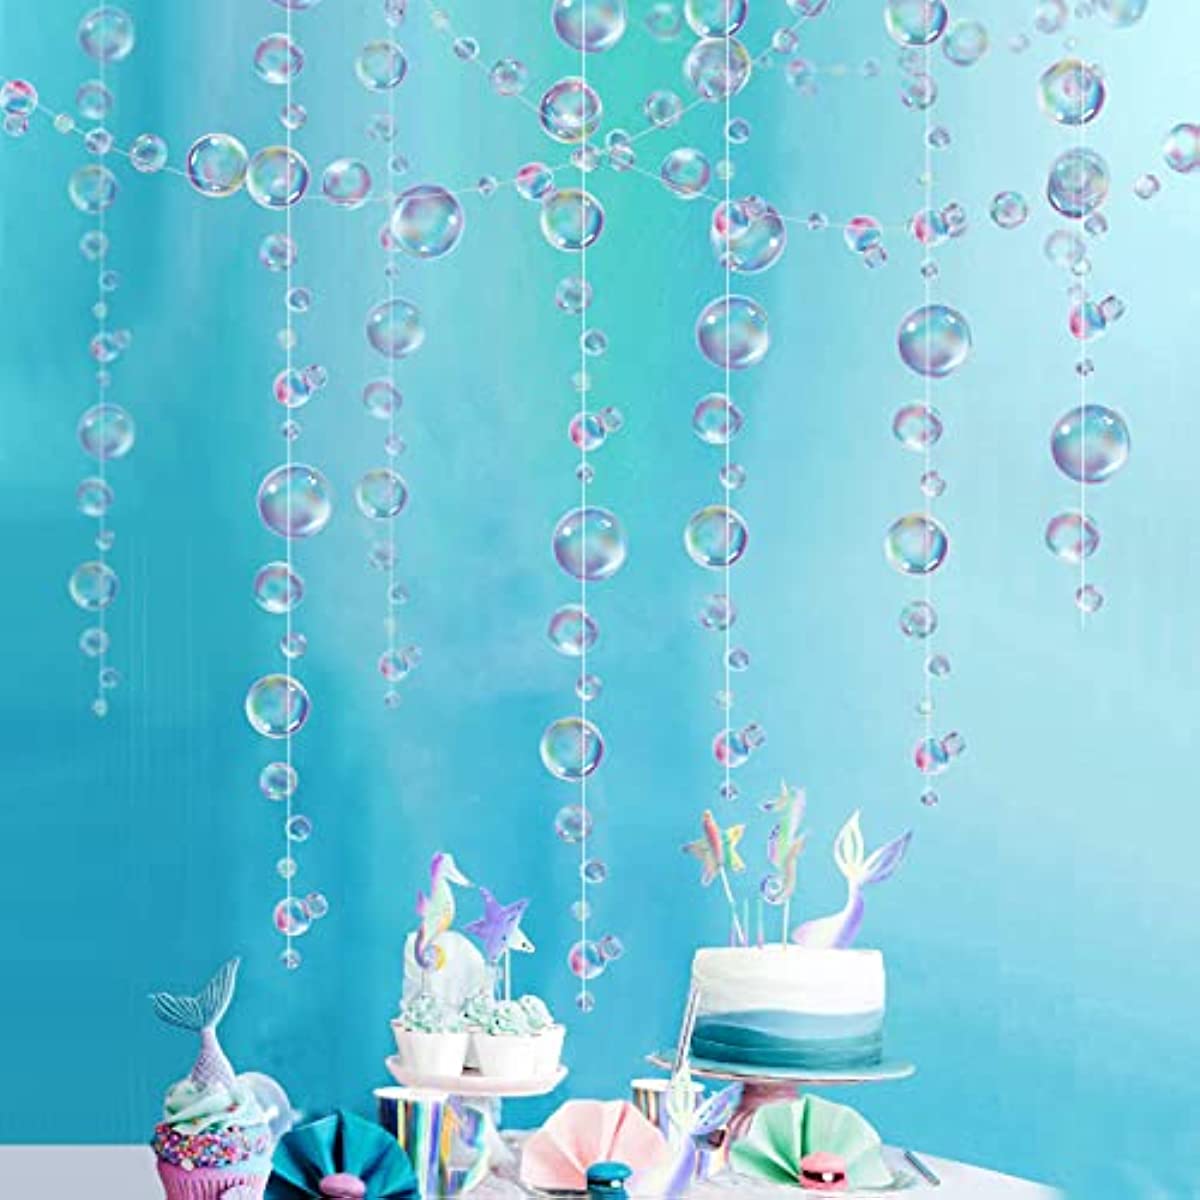 Little Mermaid Party Decoration Paper Blue Bubble Garlands